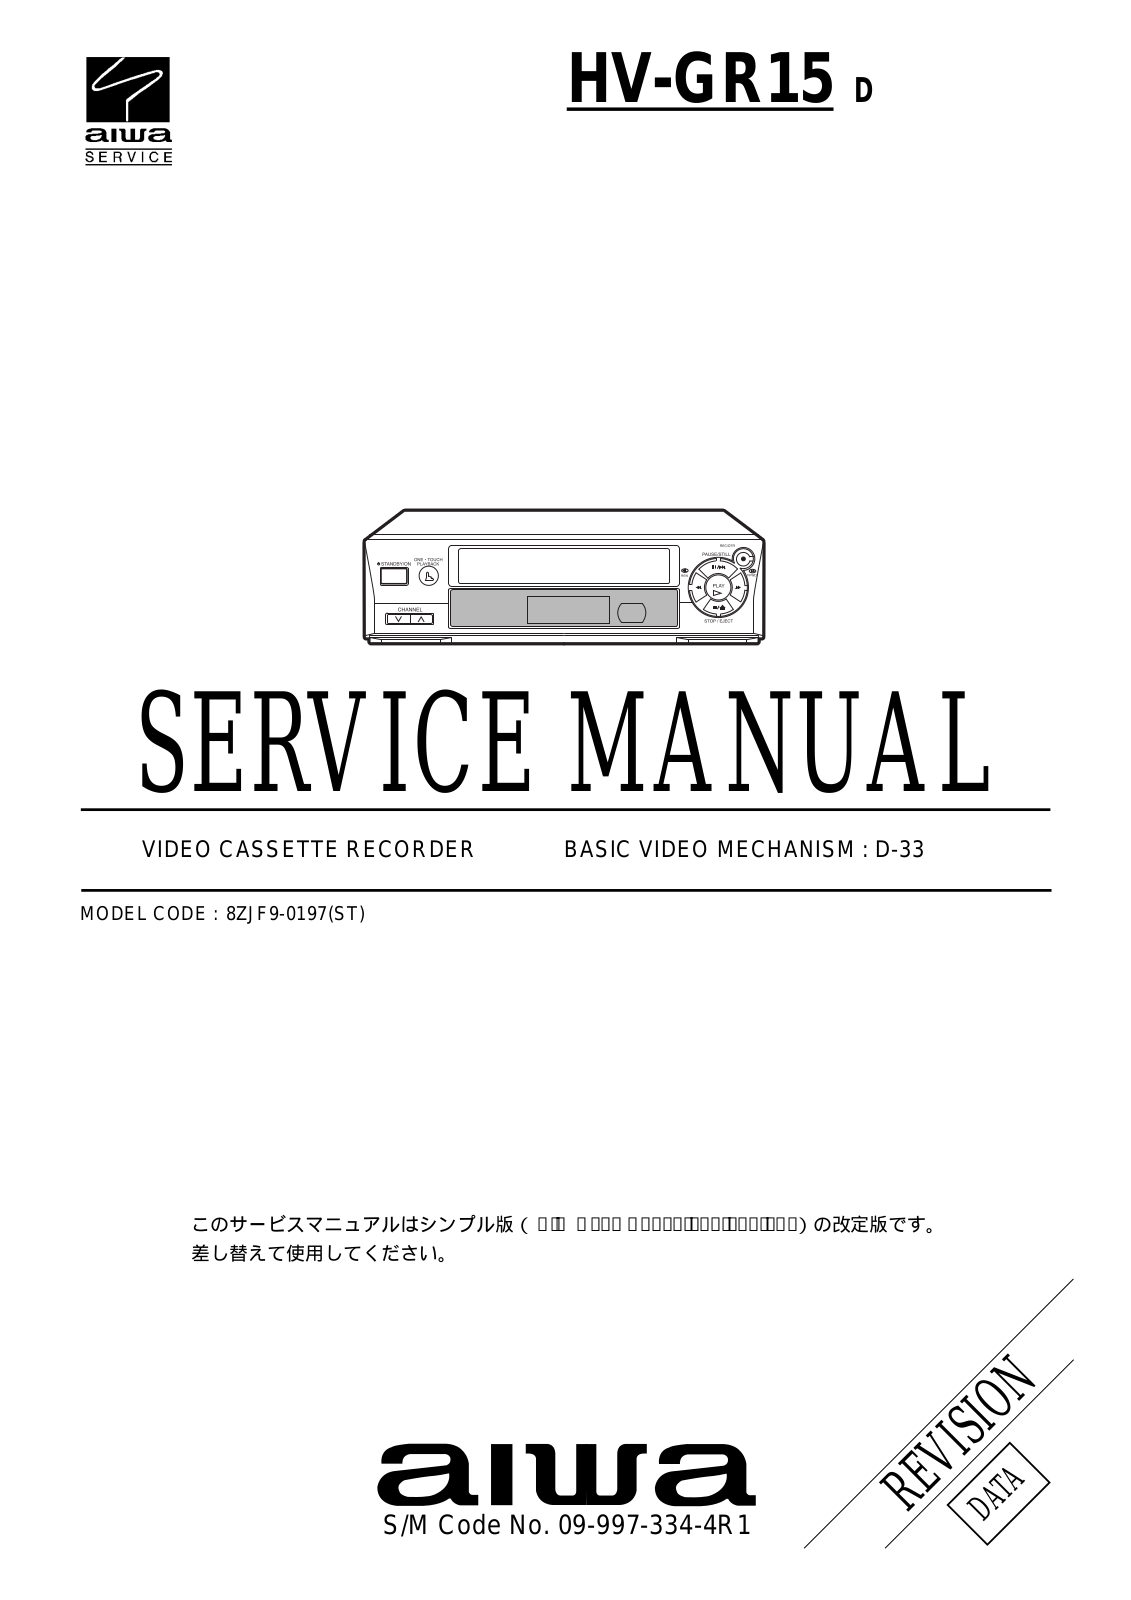 Aiwa HV-GR15 Service Manual